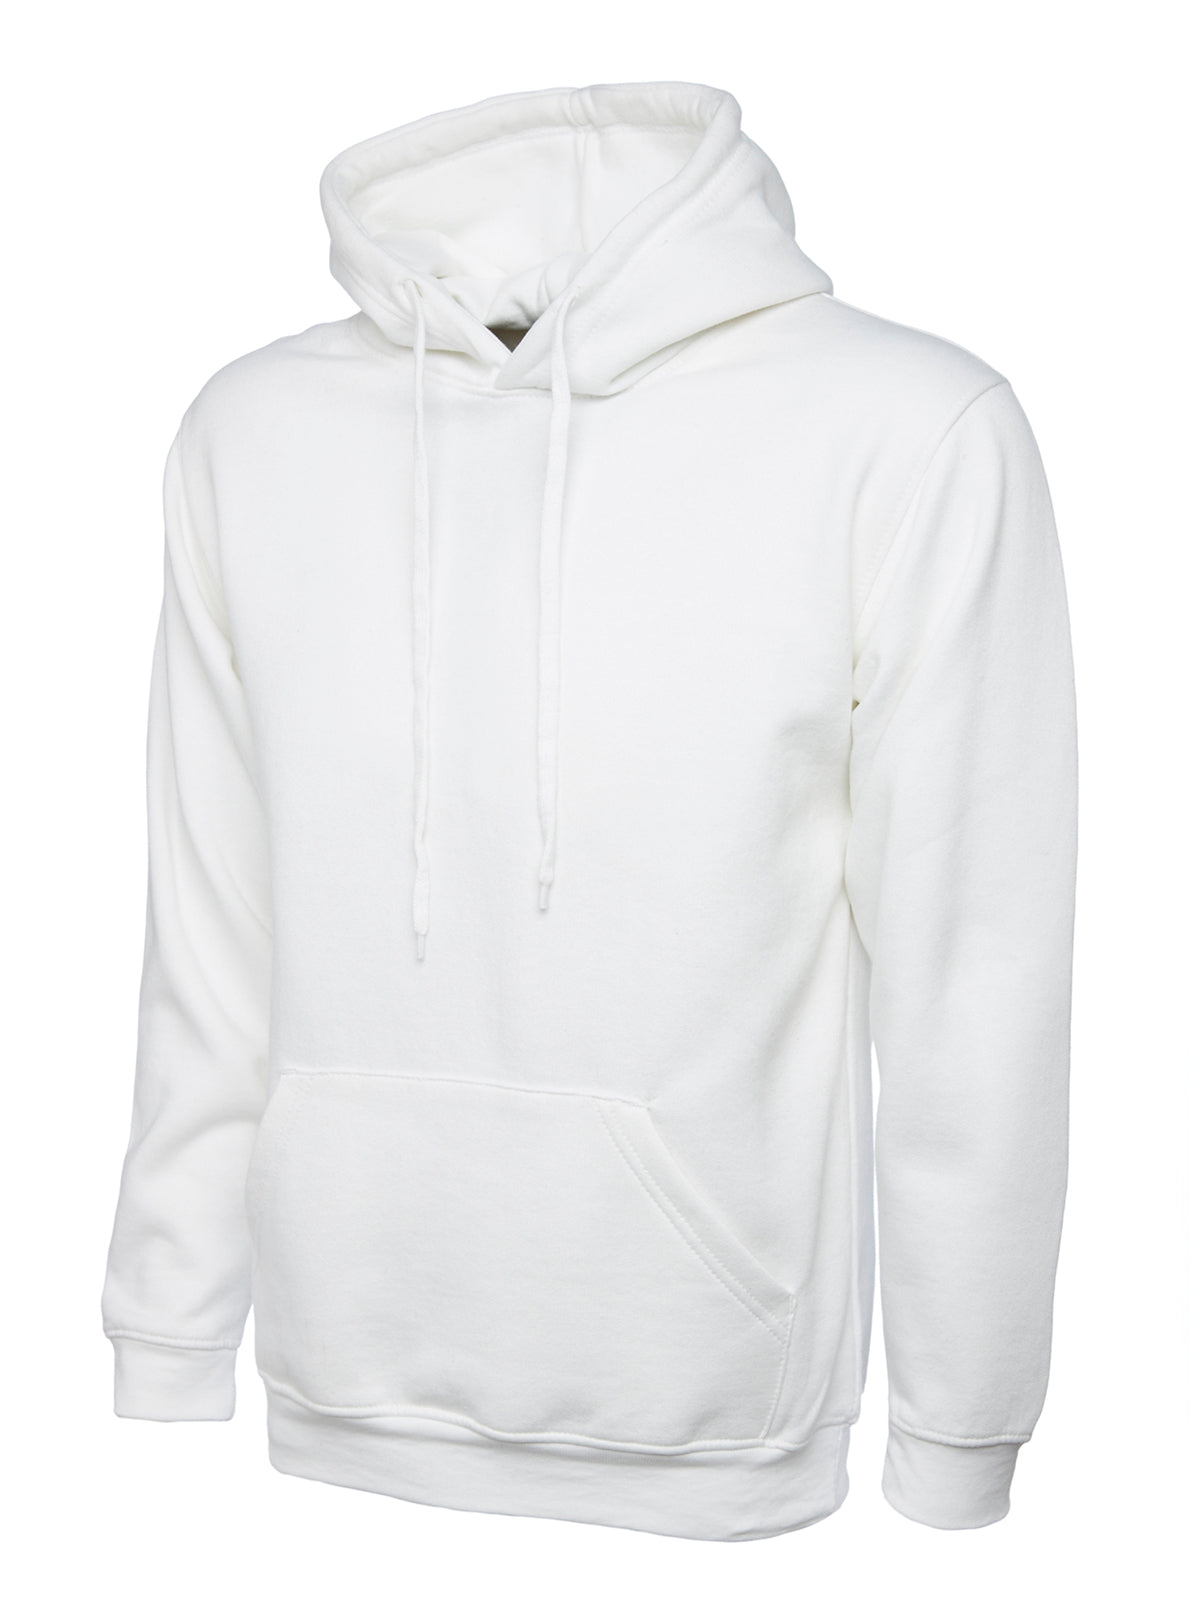 Uneek Classic Hoodie Sweatshirt - White